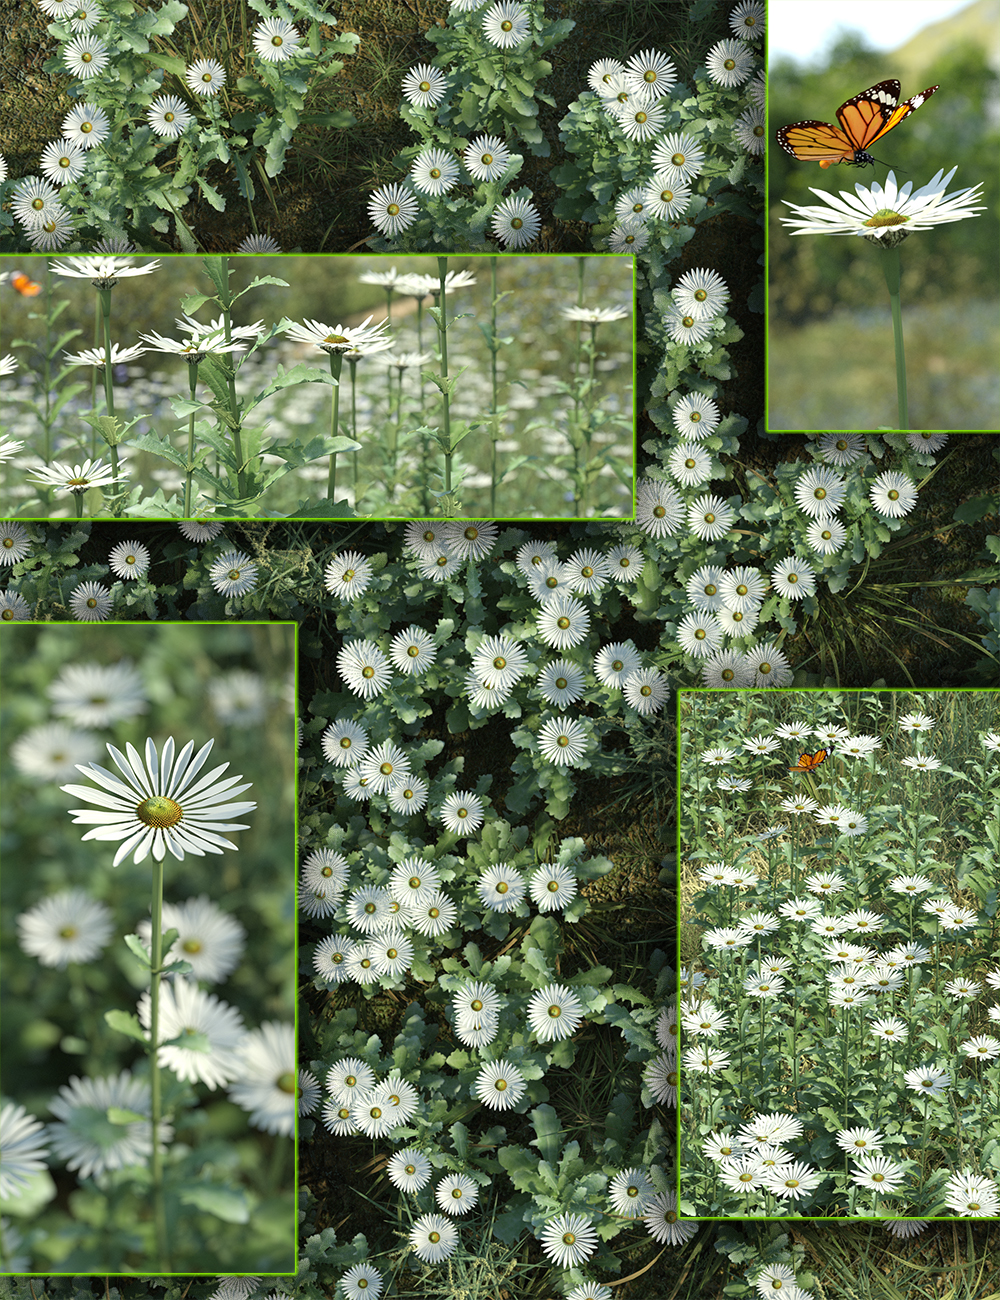 Meadow Flowers - Oxeye Daisy by: MartinJFrost, 3D Models by Daz 3D